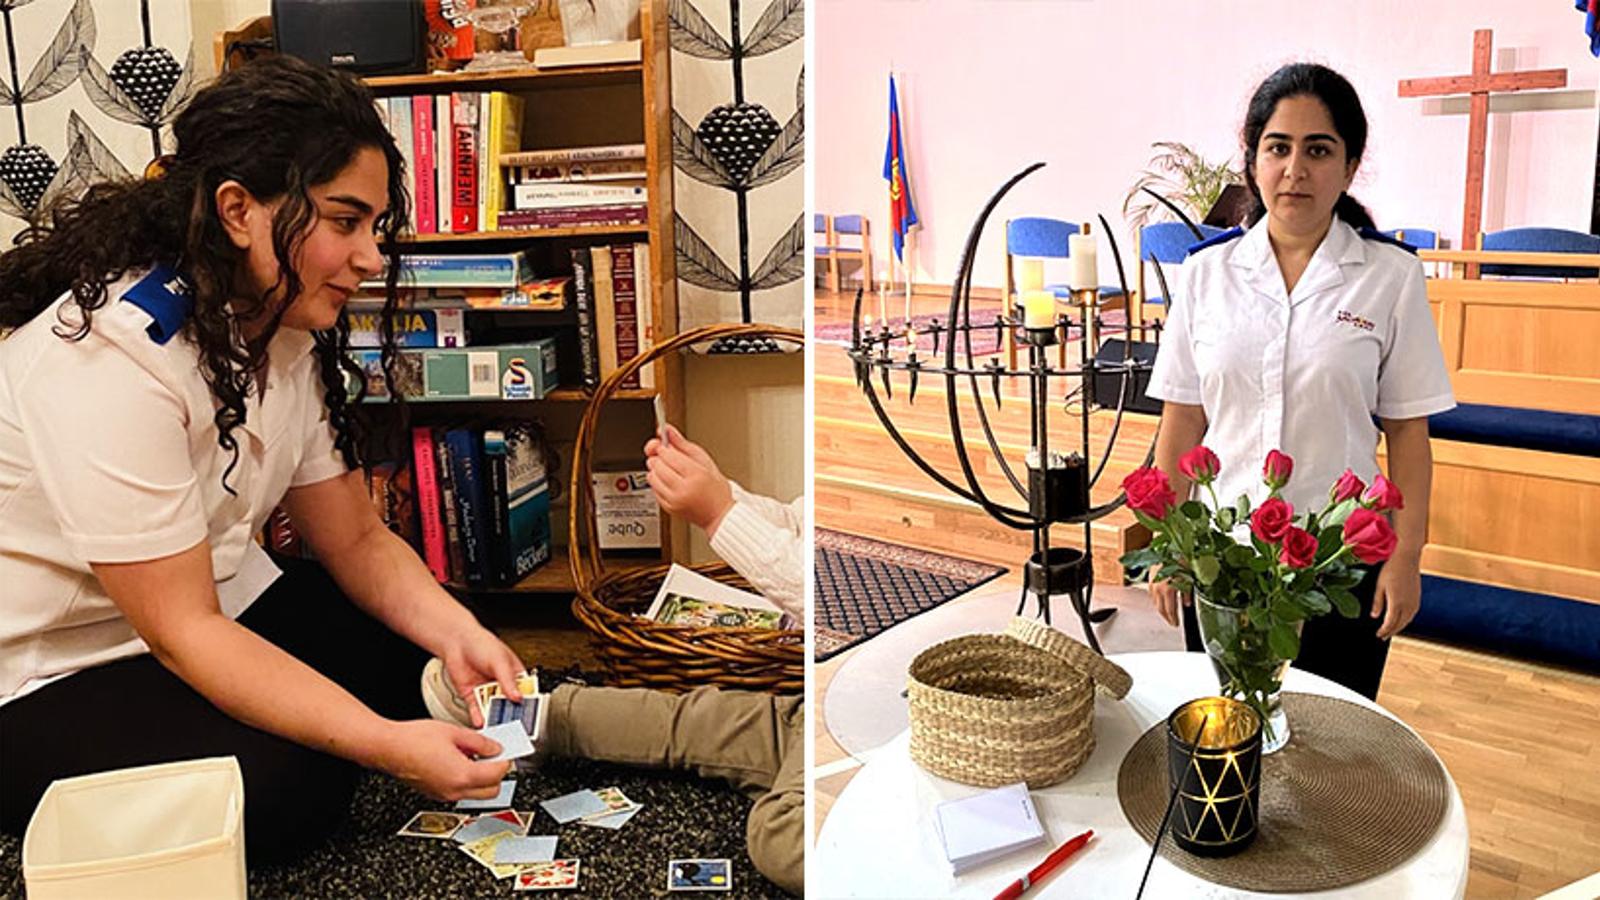 Till vänster: Setareh som sitter och spelar kort med ett barn. Till höger: Setareh på kåren i Göteborg. Framför henne står ett bord med en vas med blommor, ett tänt ljus, papper och penna. Bakom henne står det stolar och ett kors står lutat mot väggen.